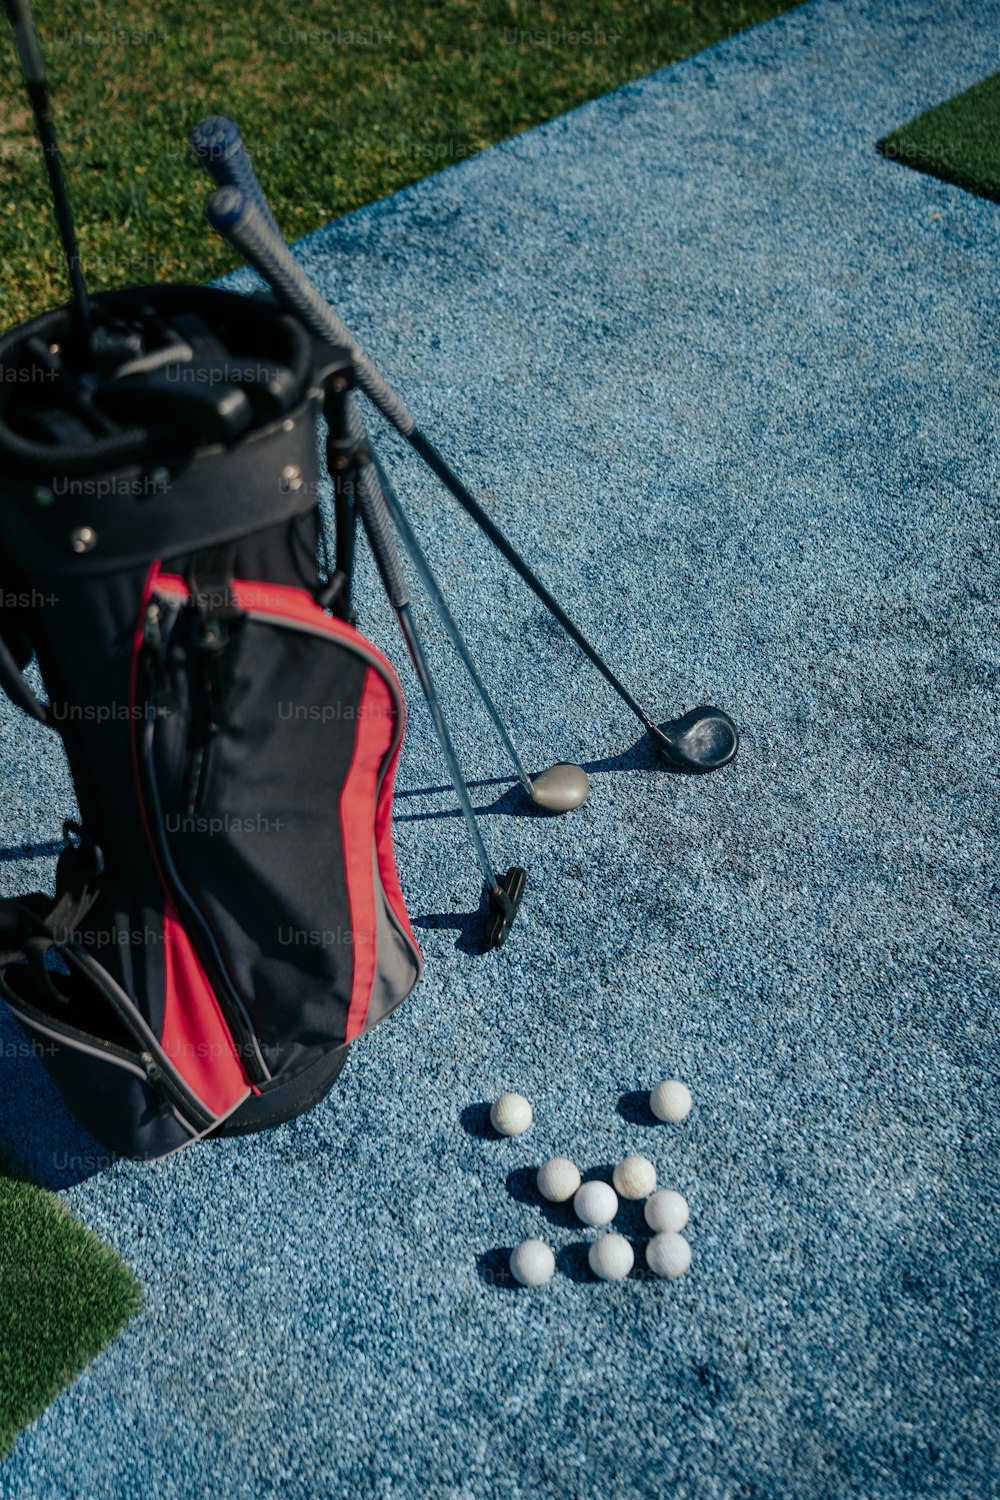 un sac de balles de golf posé sur le sol à côté d�’un club de golf